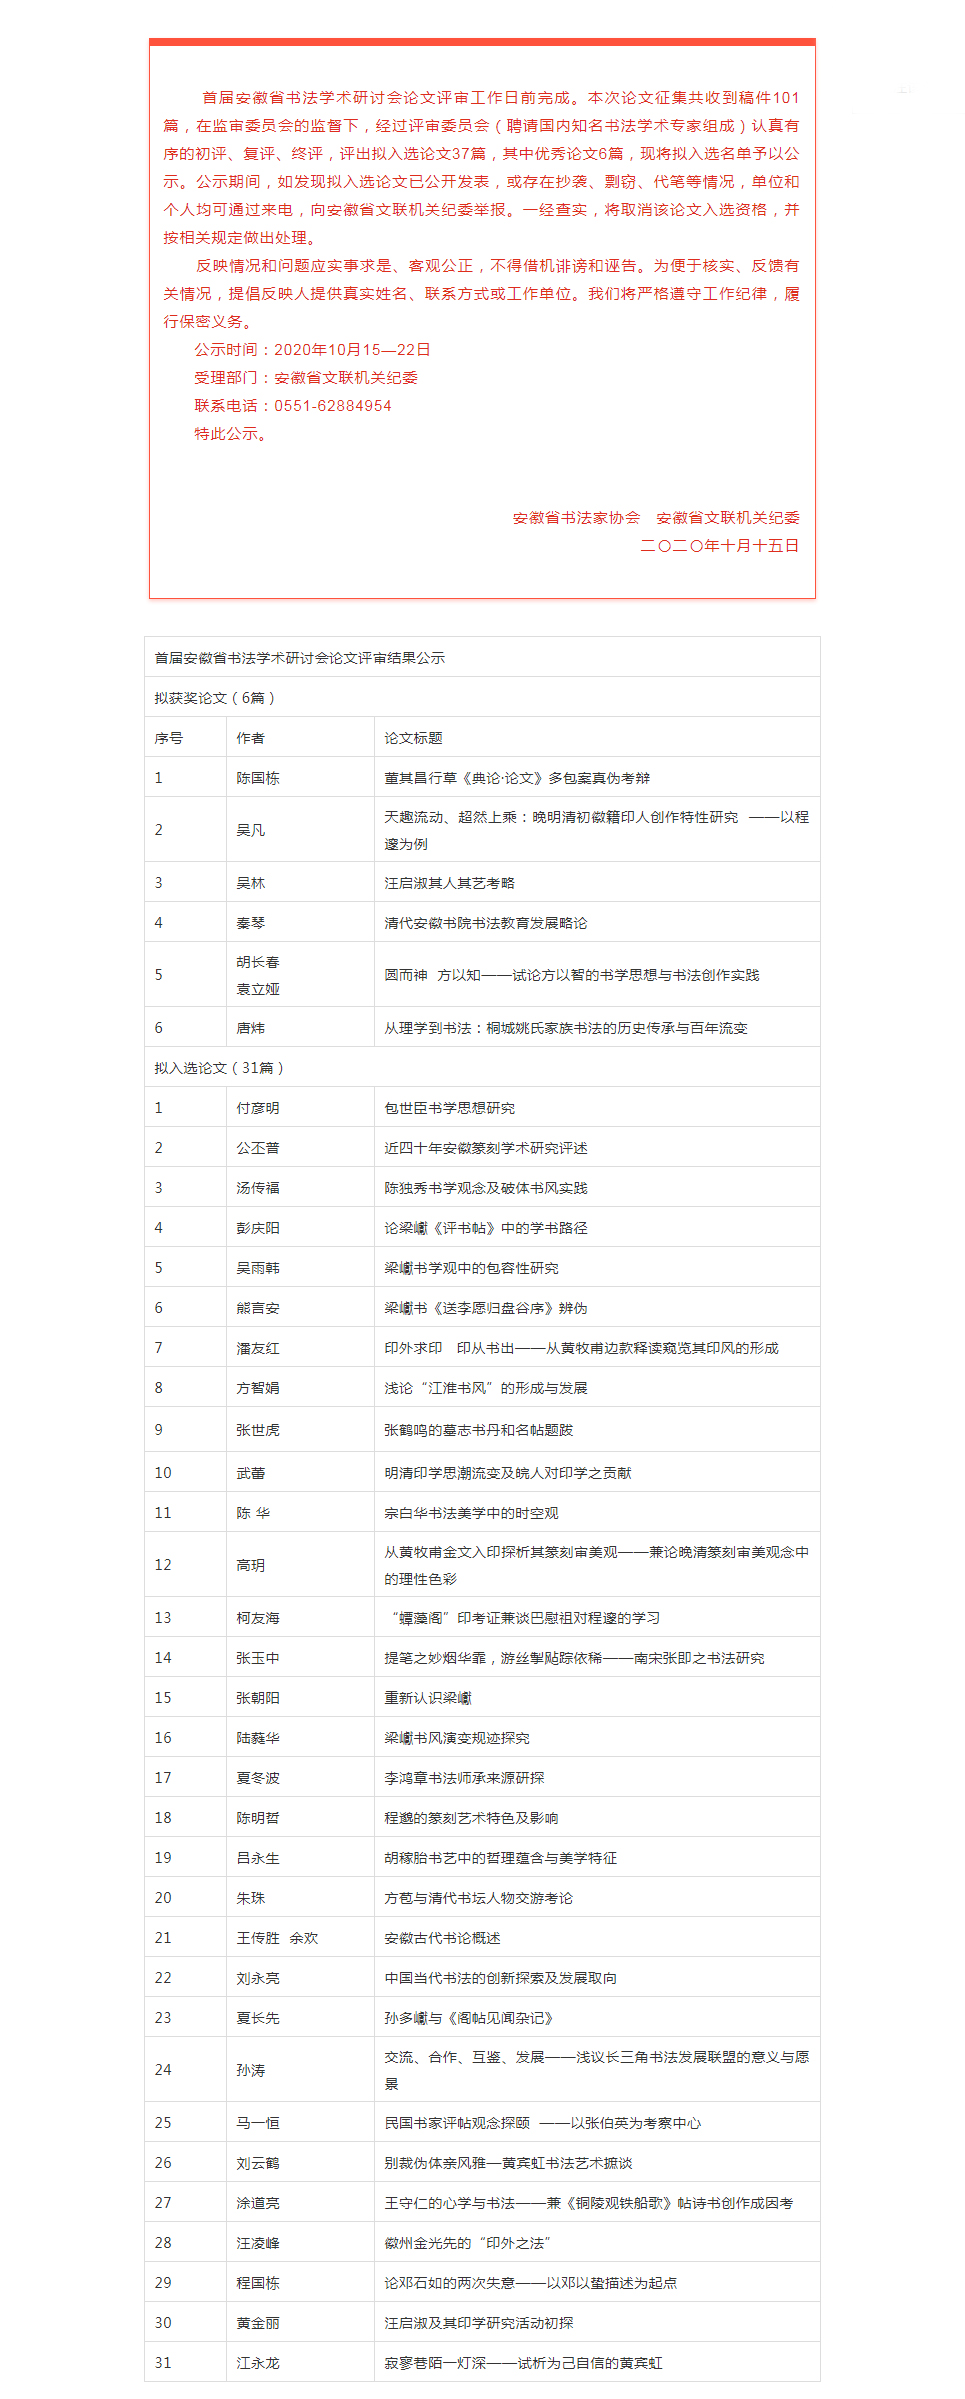 首届安徽省书法学术研讨会拟入选论文公示名单(图1)